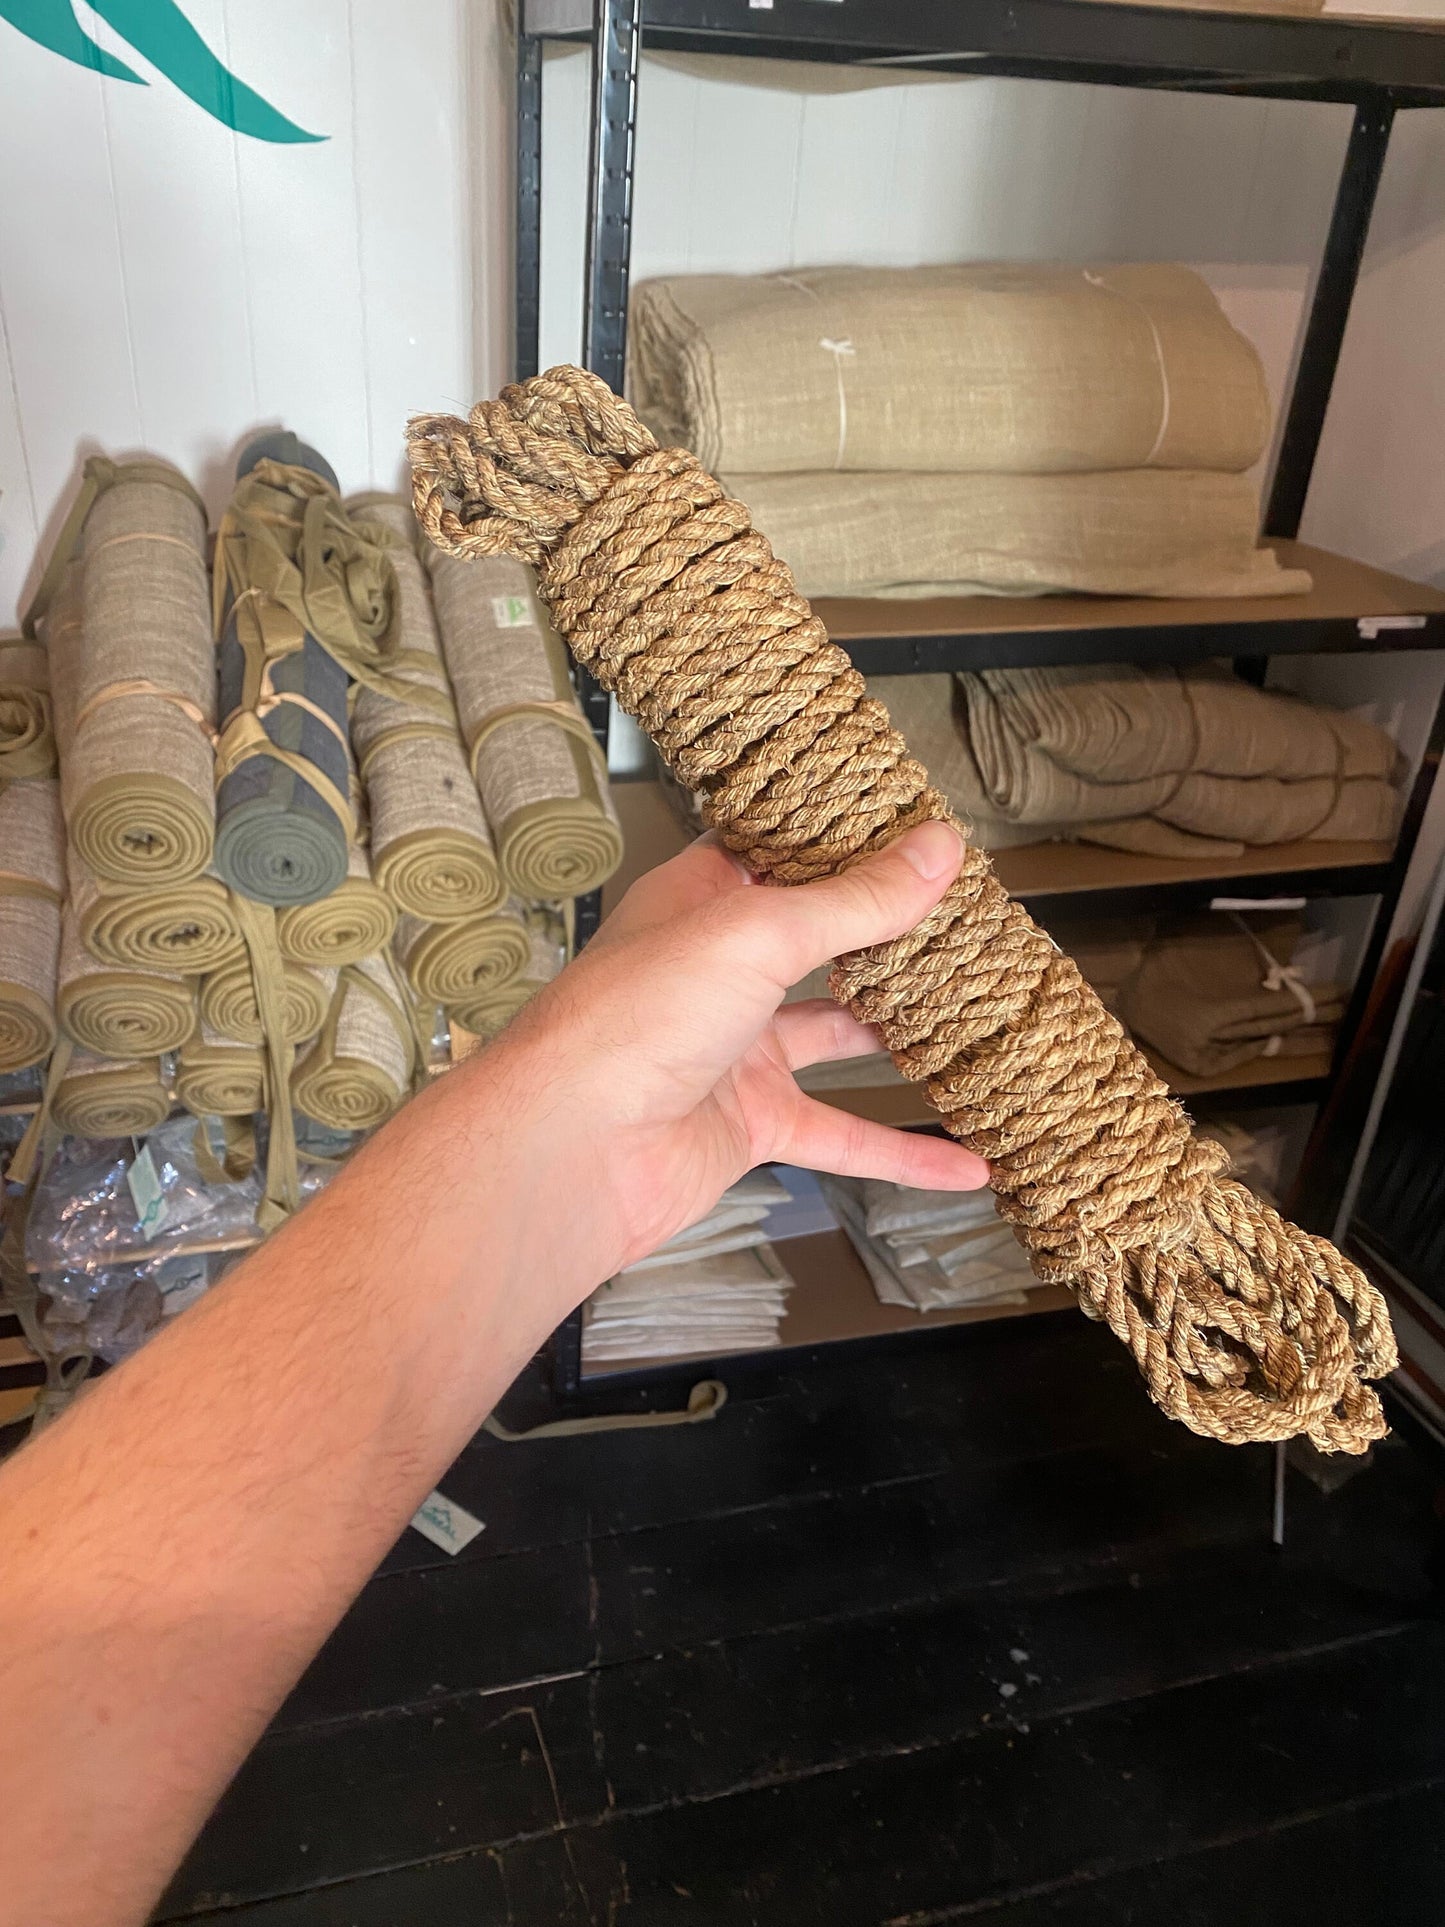 100% Hemp rope - Traditionally handmade Hemp rope - 12m